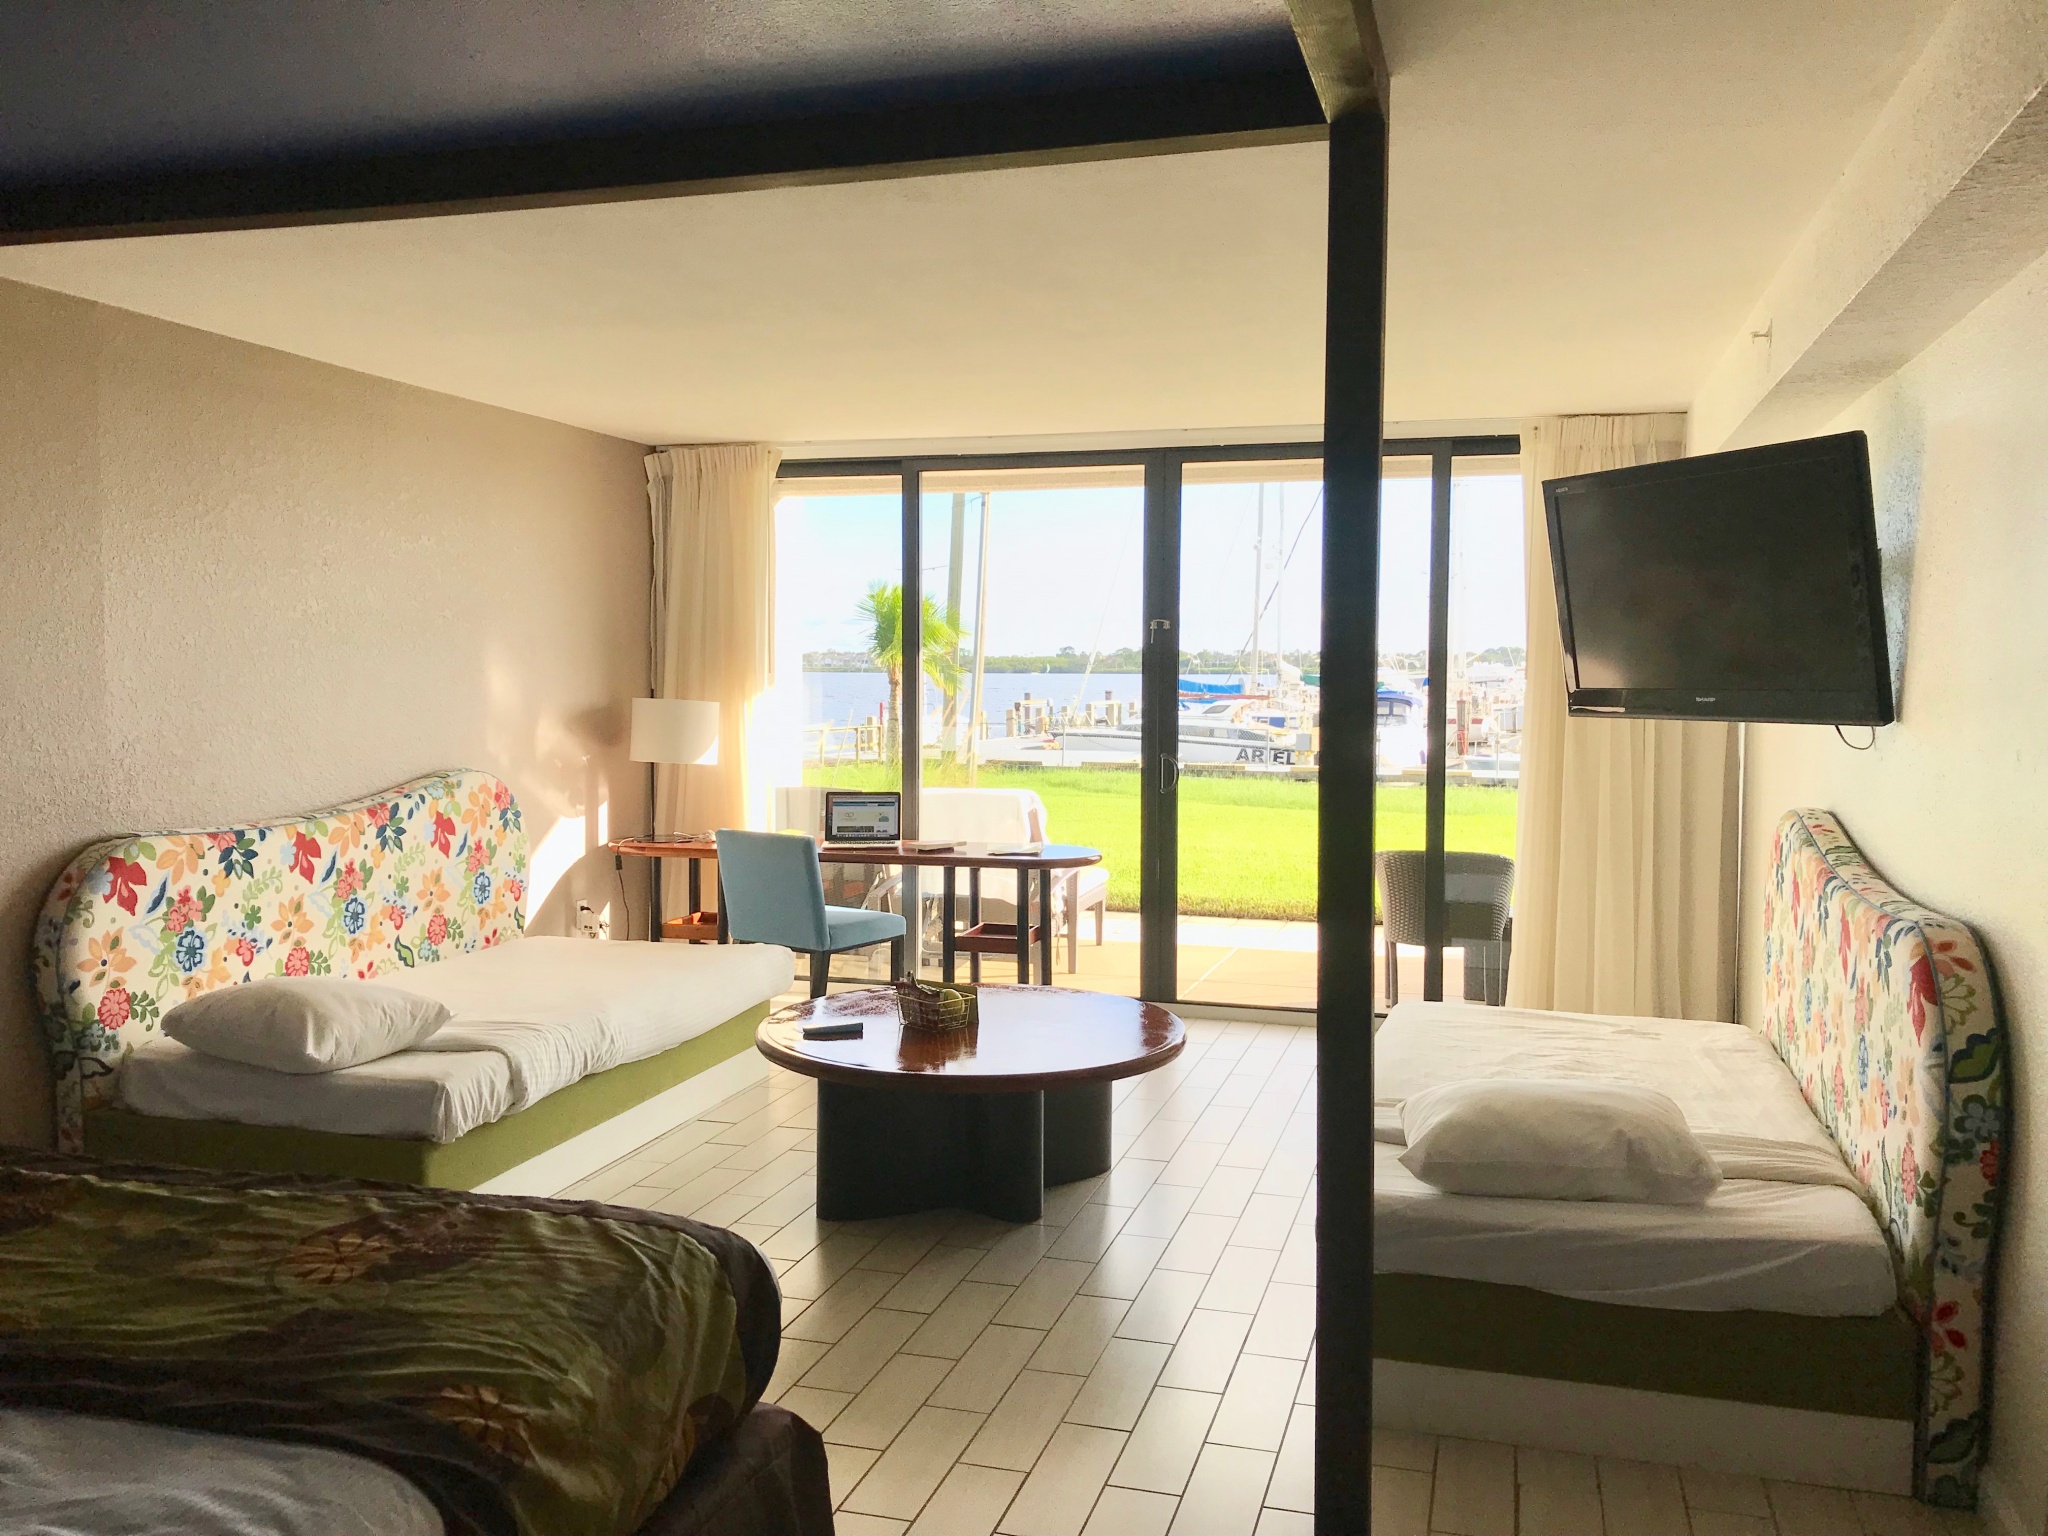 Club Med Sandpiper Bay room